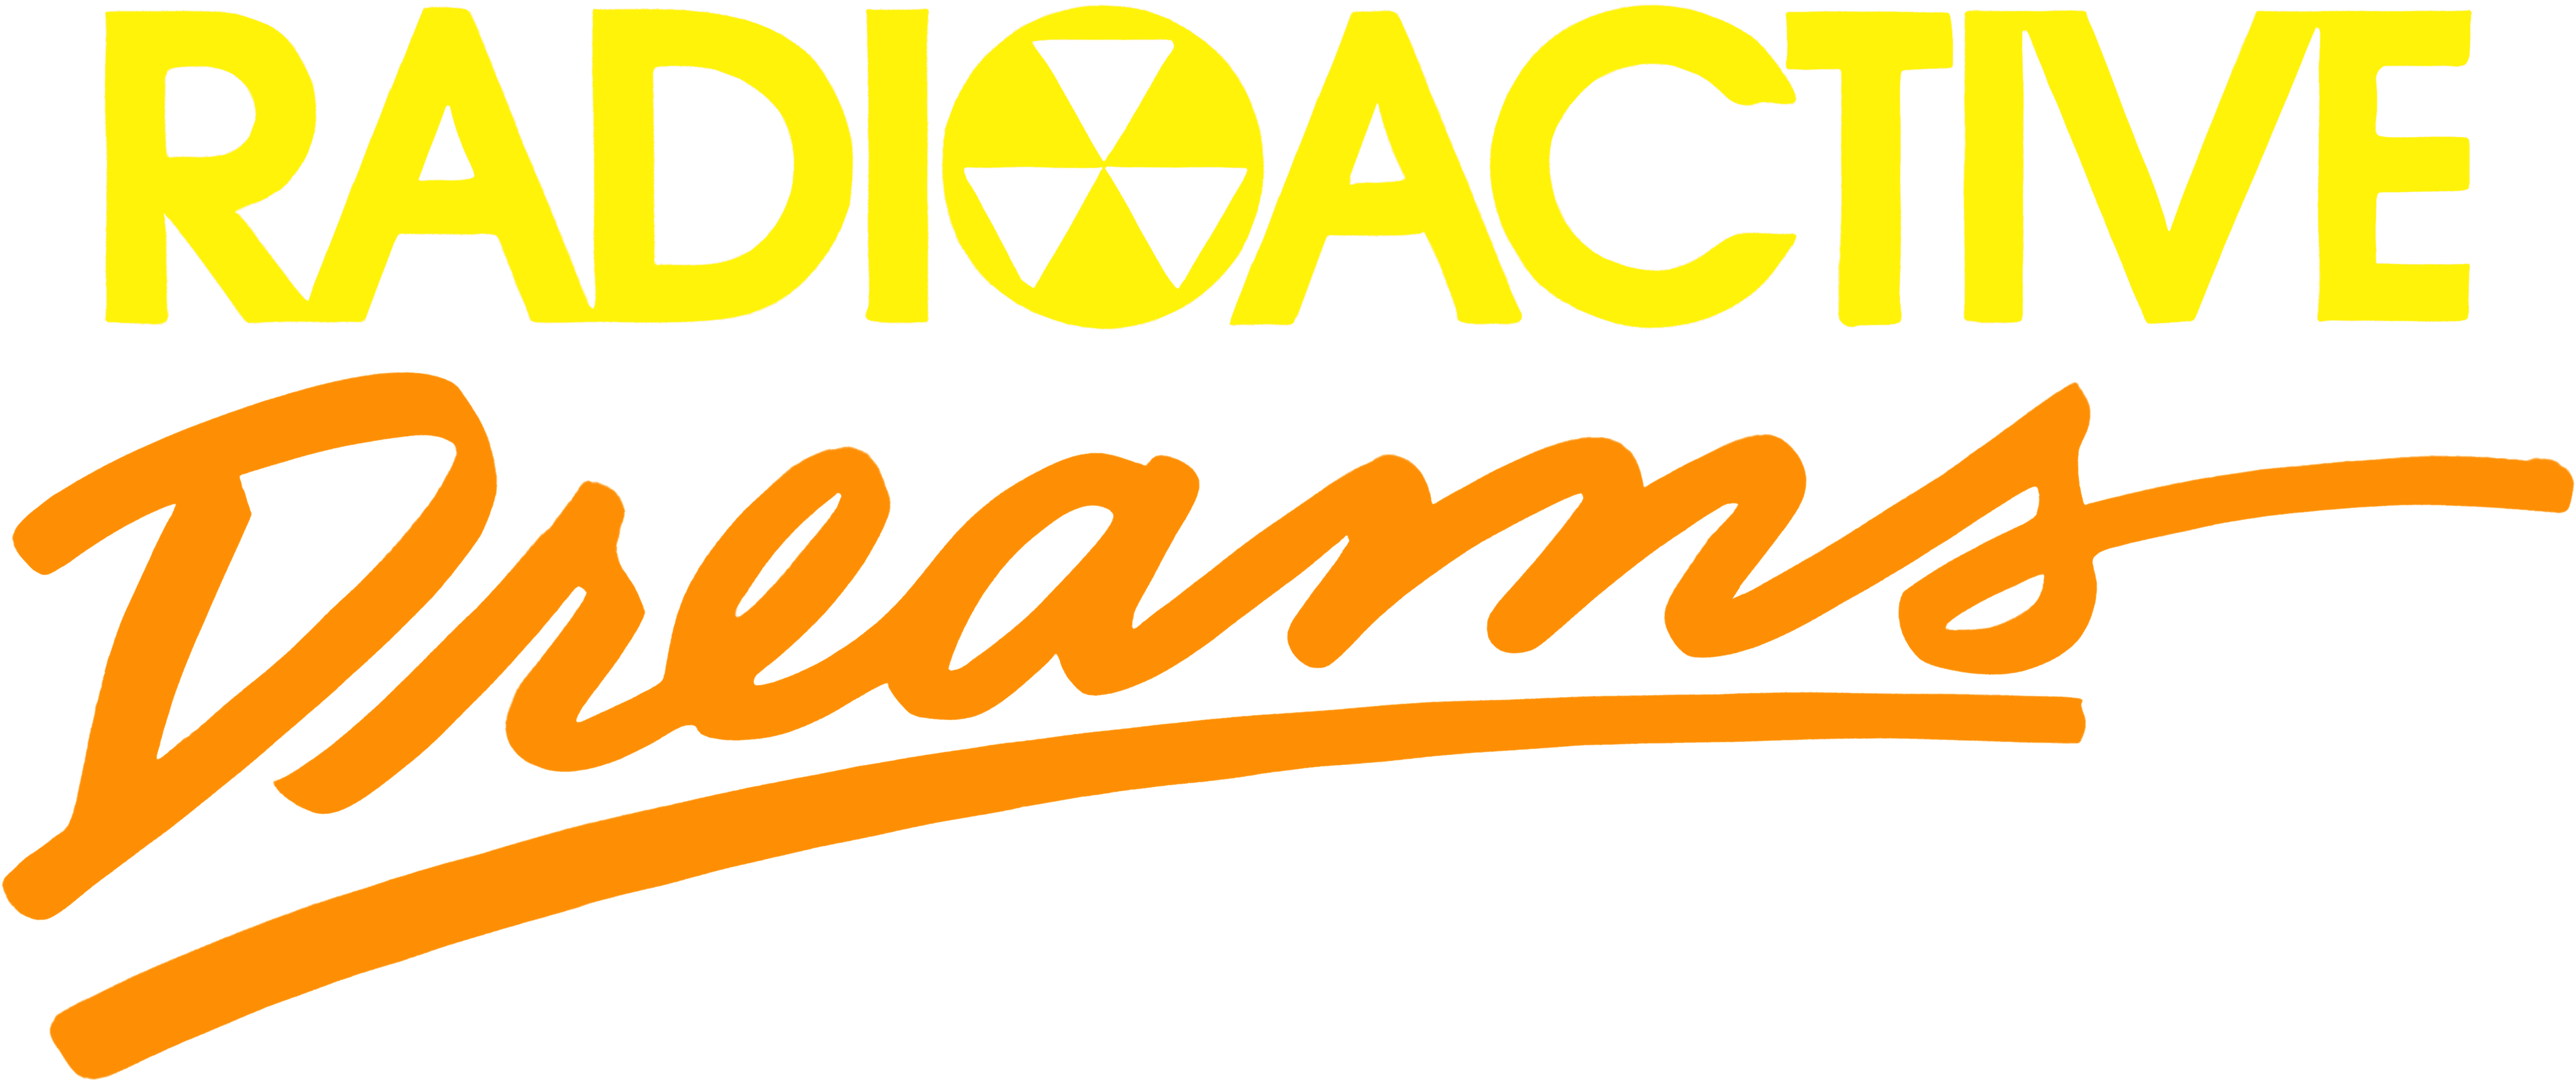 Radioactive Dreams logo